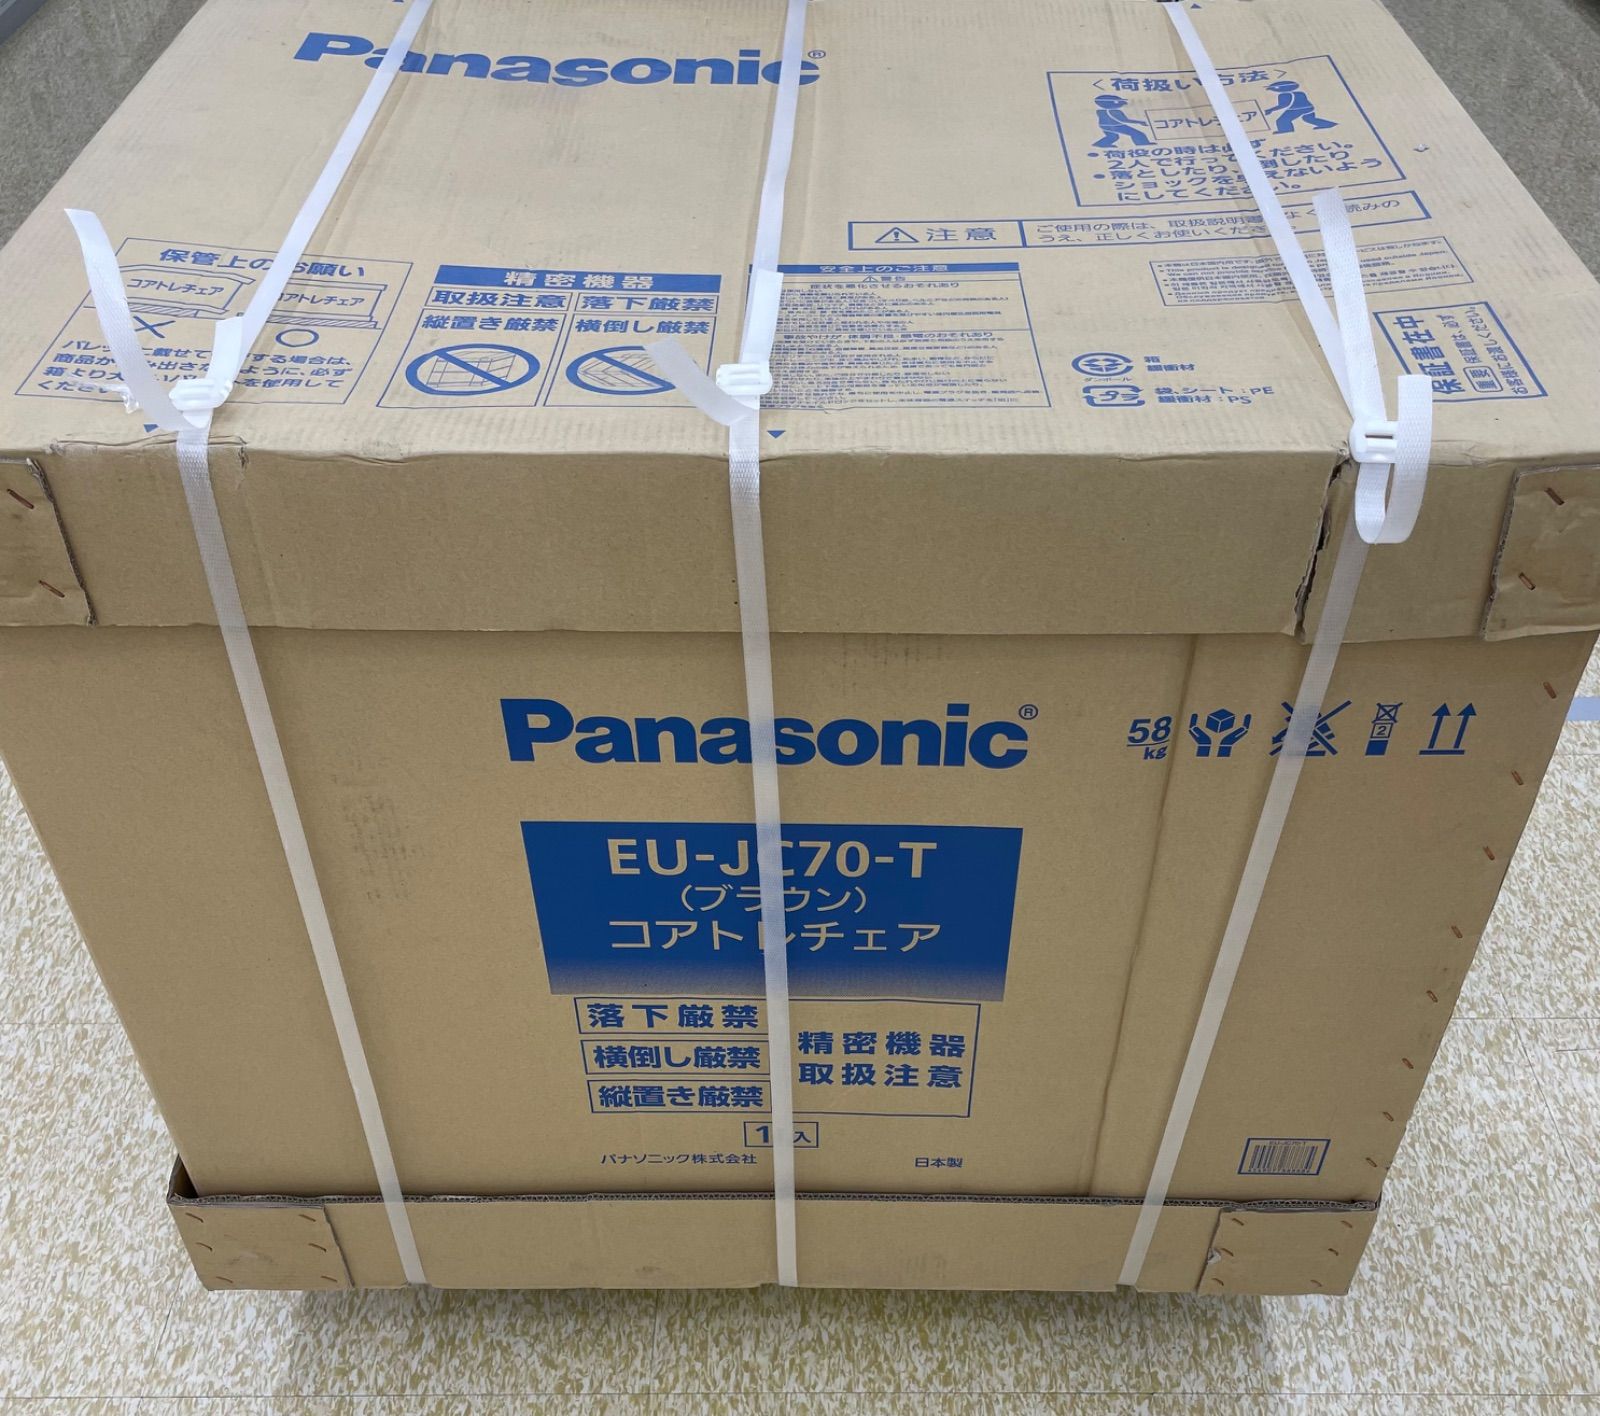 Panasonic コアトレチェア EU-JC70 [ブラウン]-